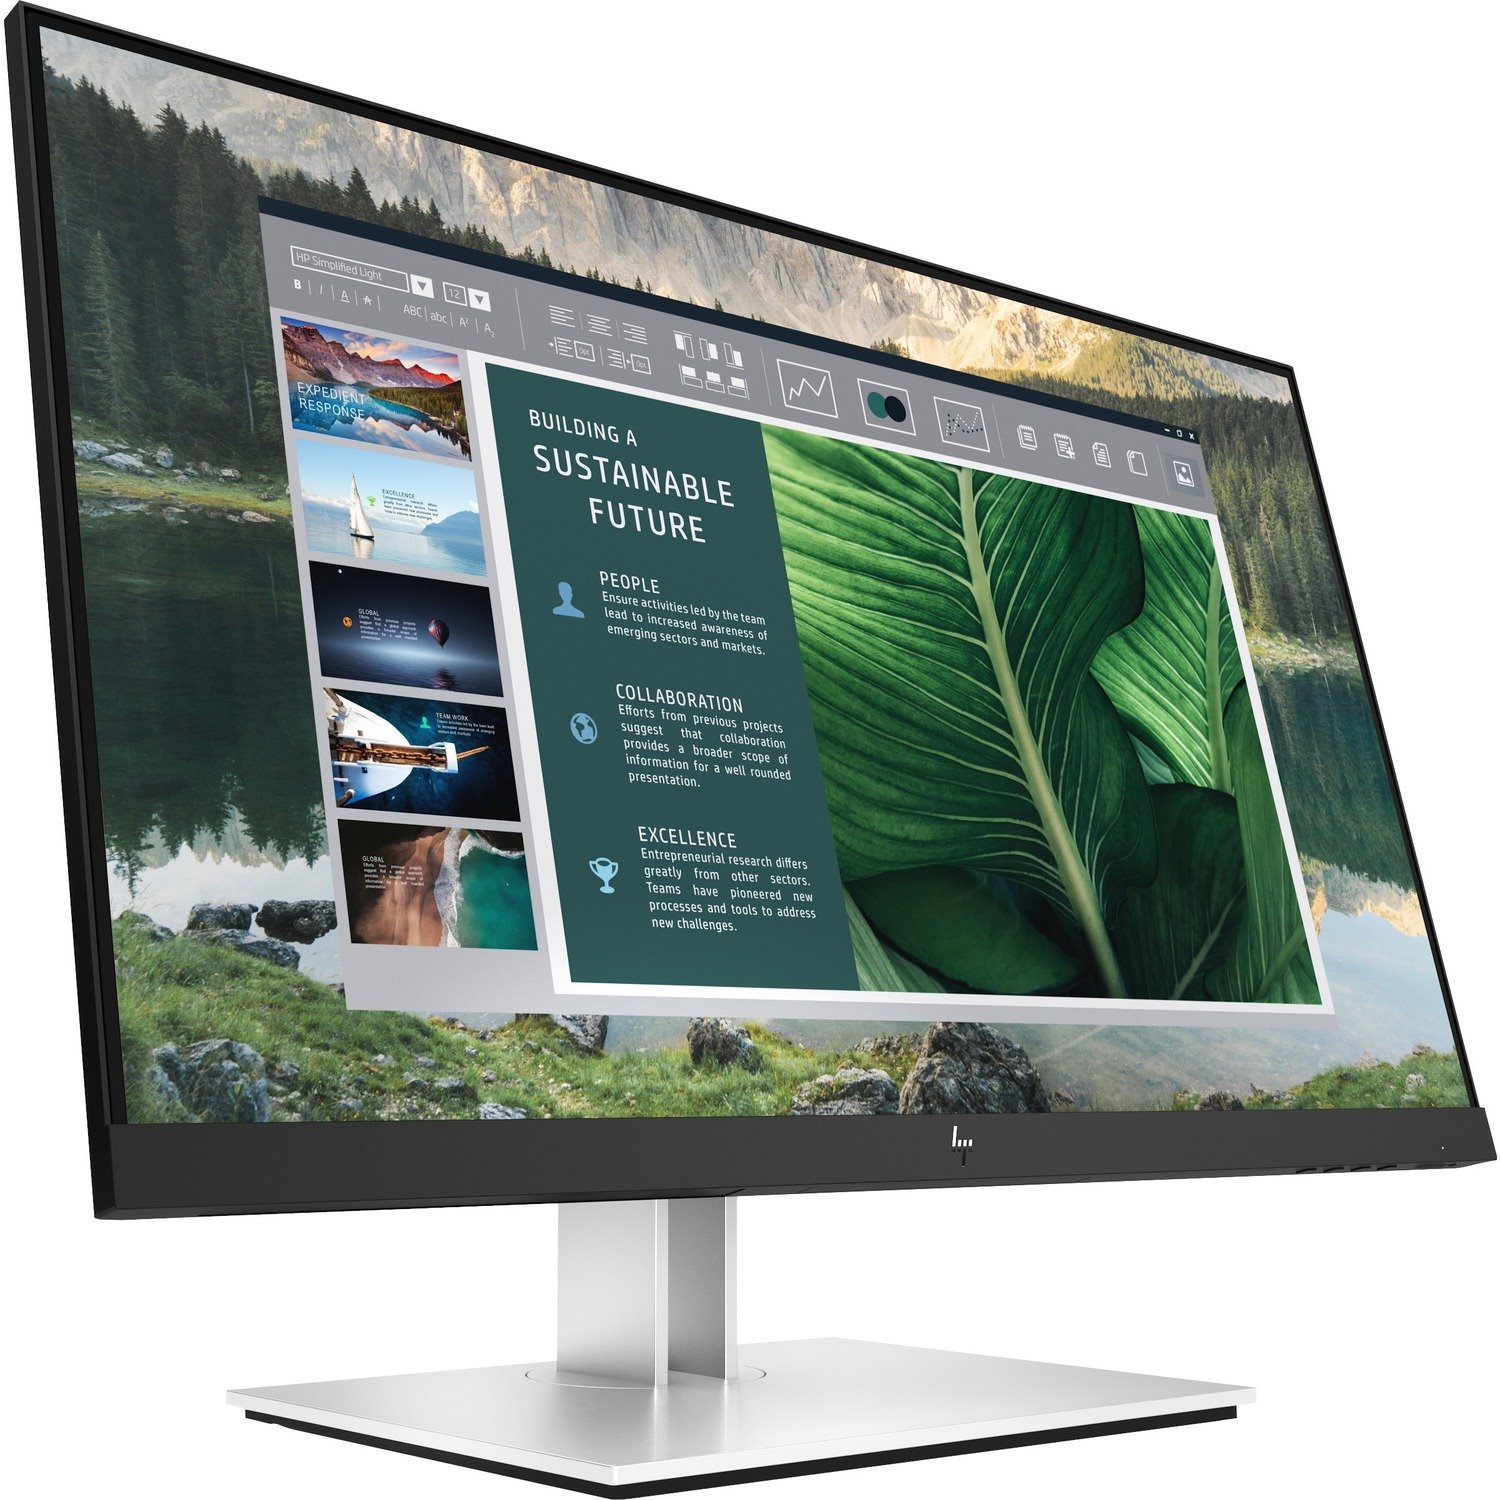 HP E24u G4 23.8" Full HD Edge LED LCD Monitor - 16:9 - Black, Silver